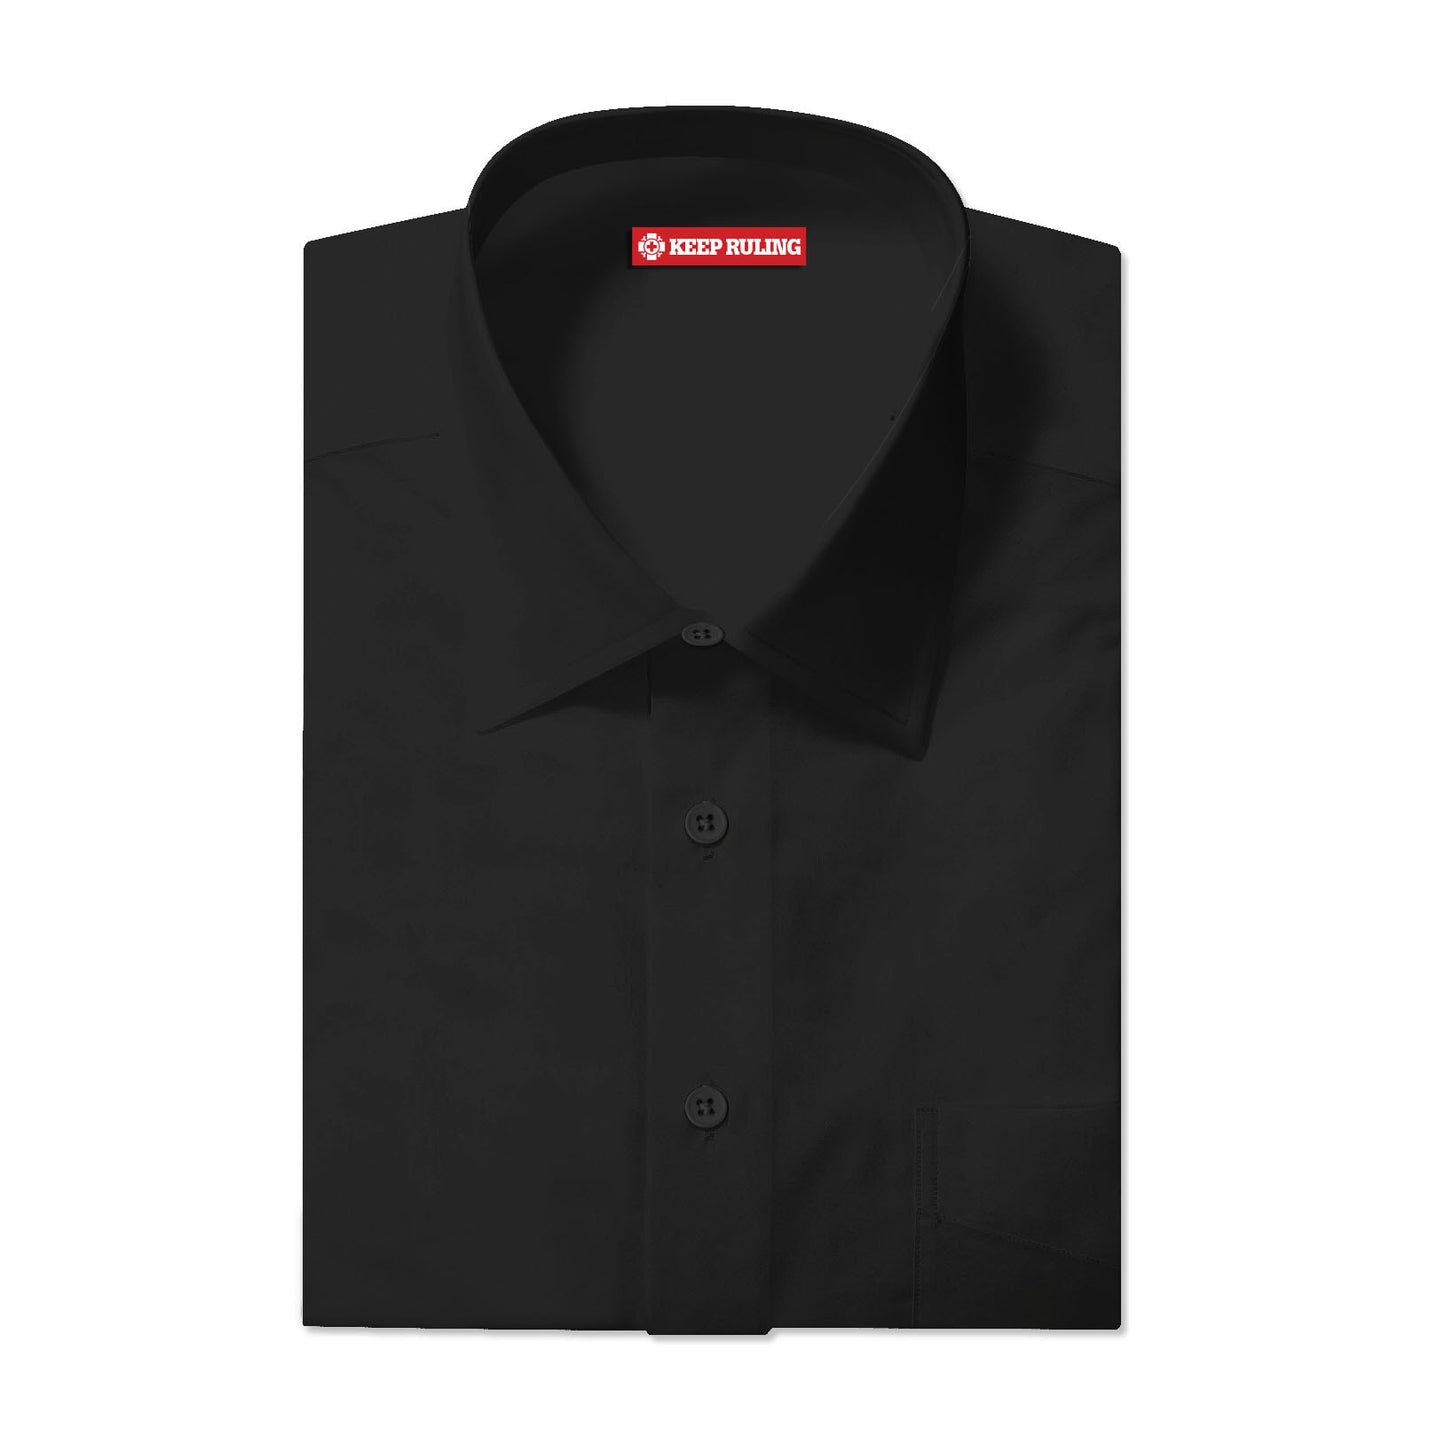 Keep Ruling Black Button Up Shirt